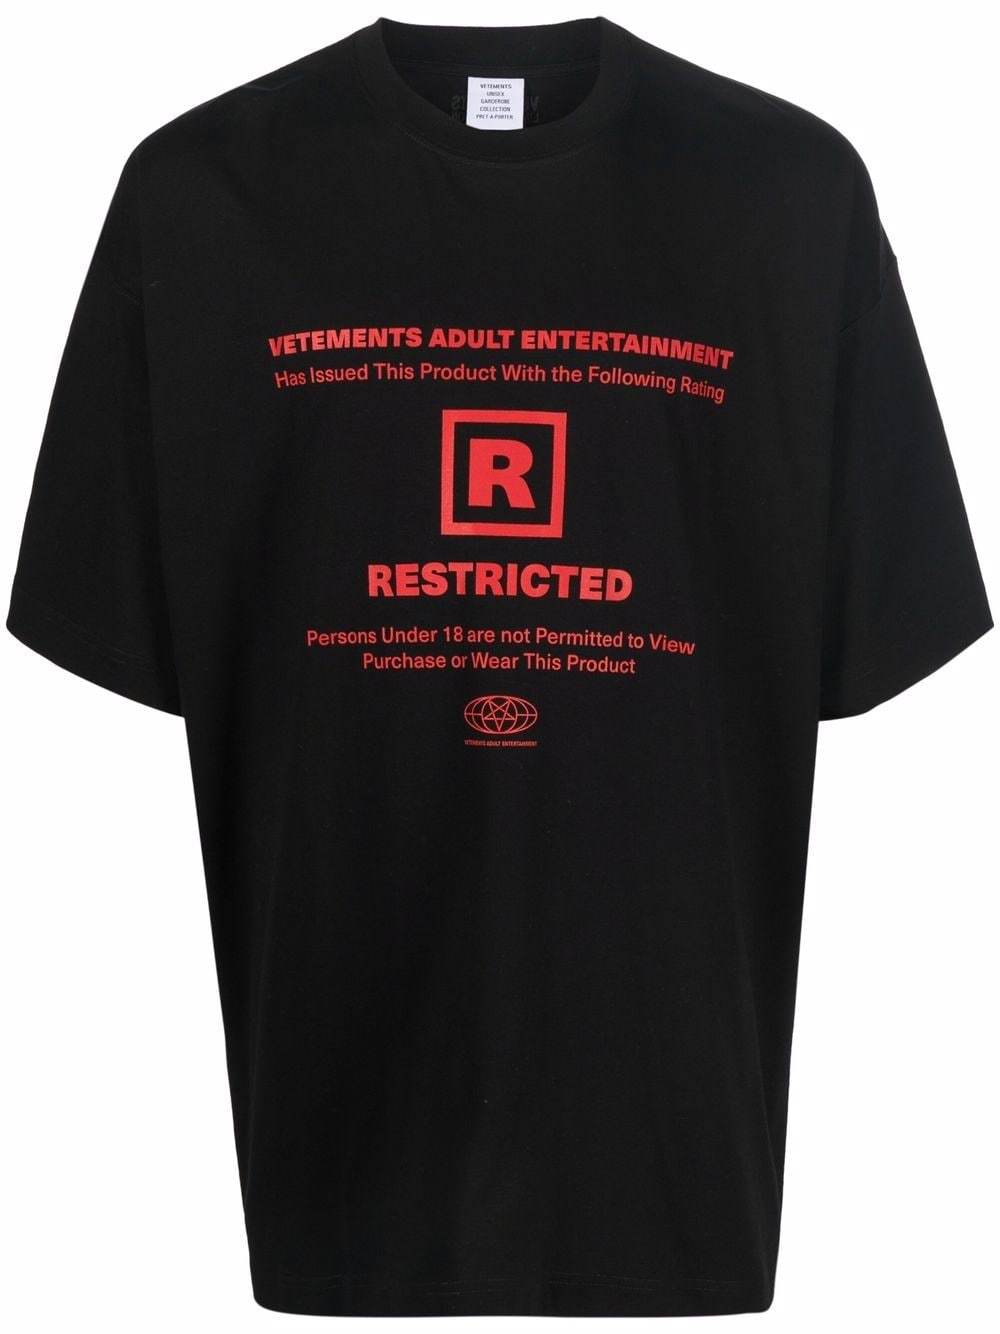 VETEMENTS 18+ Restricted Graphic T-Shirt Black - MAISONDEFASHION.COM